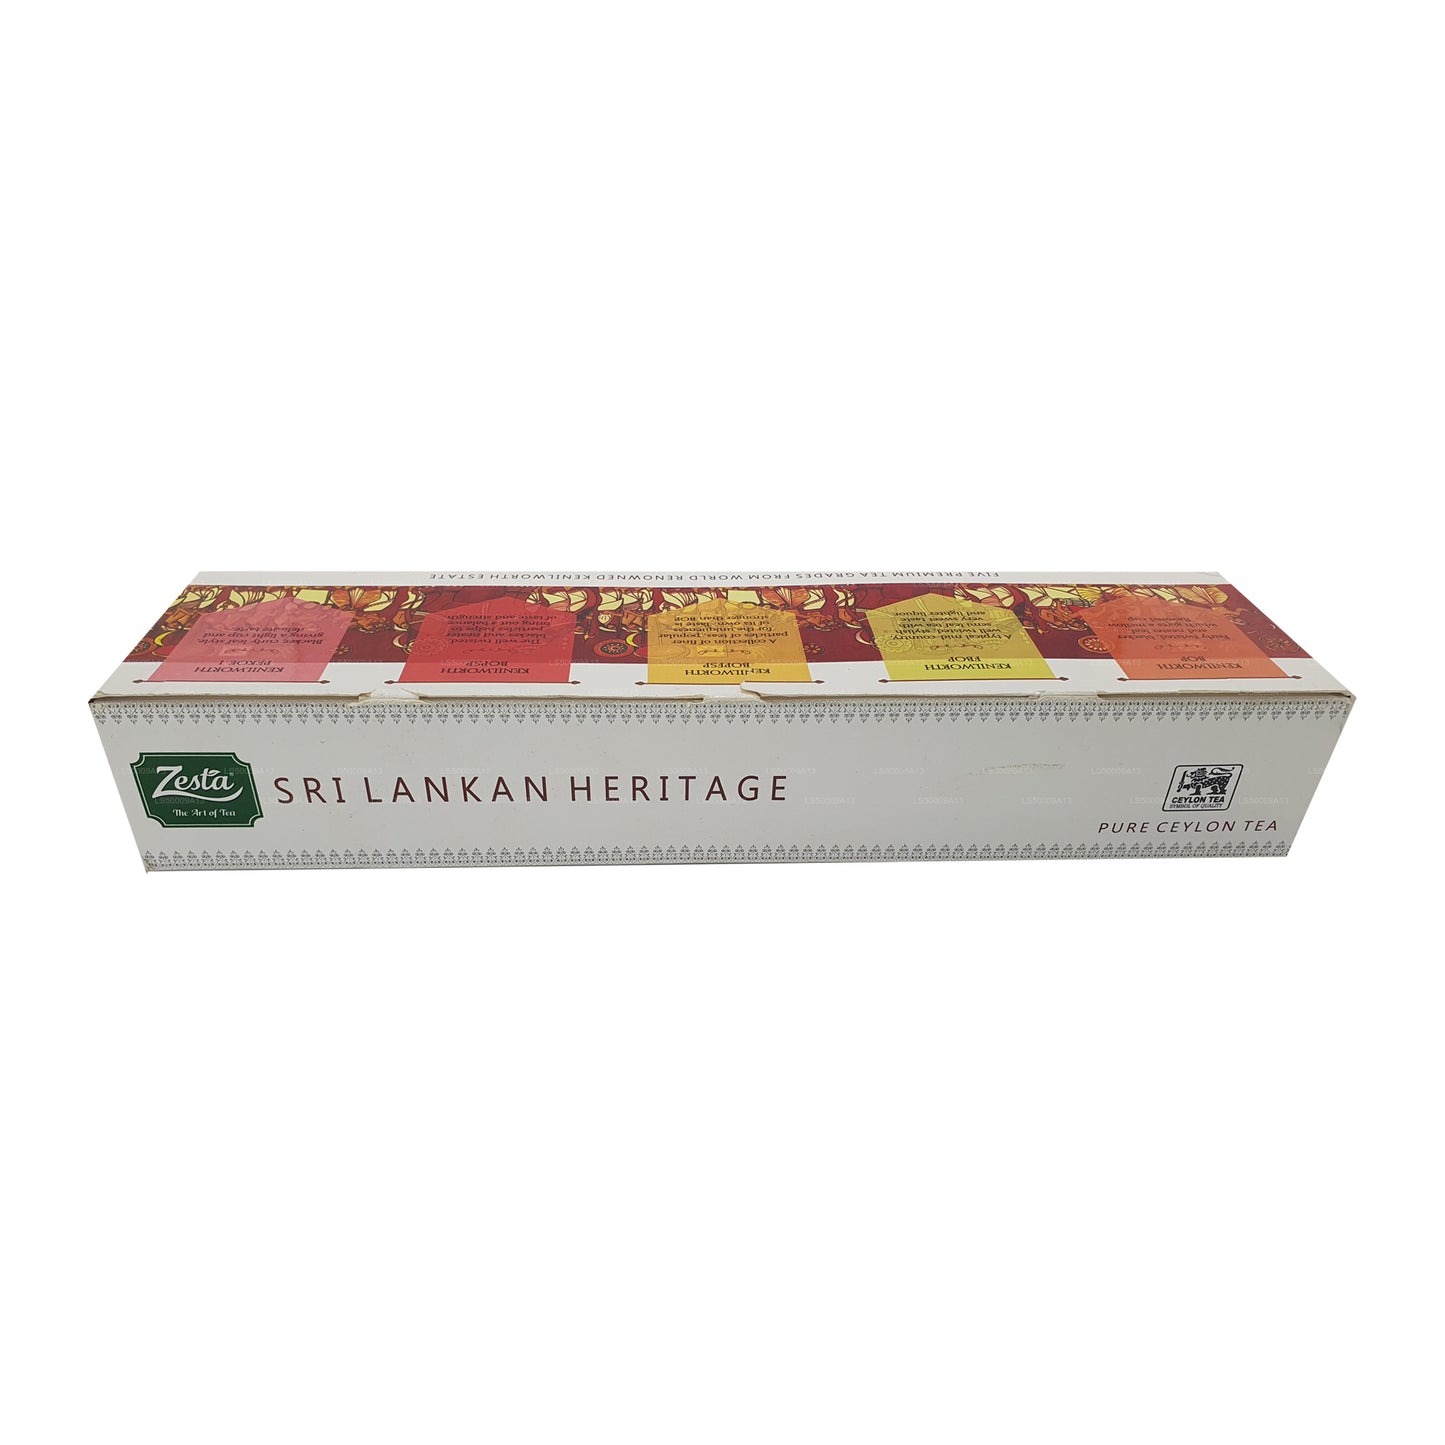 Zesta Sri Lankan Heritage Five Tea Pack (400g)